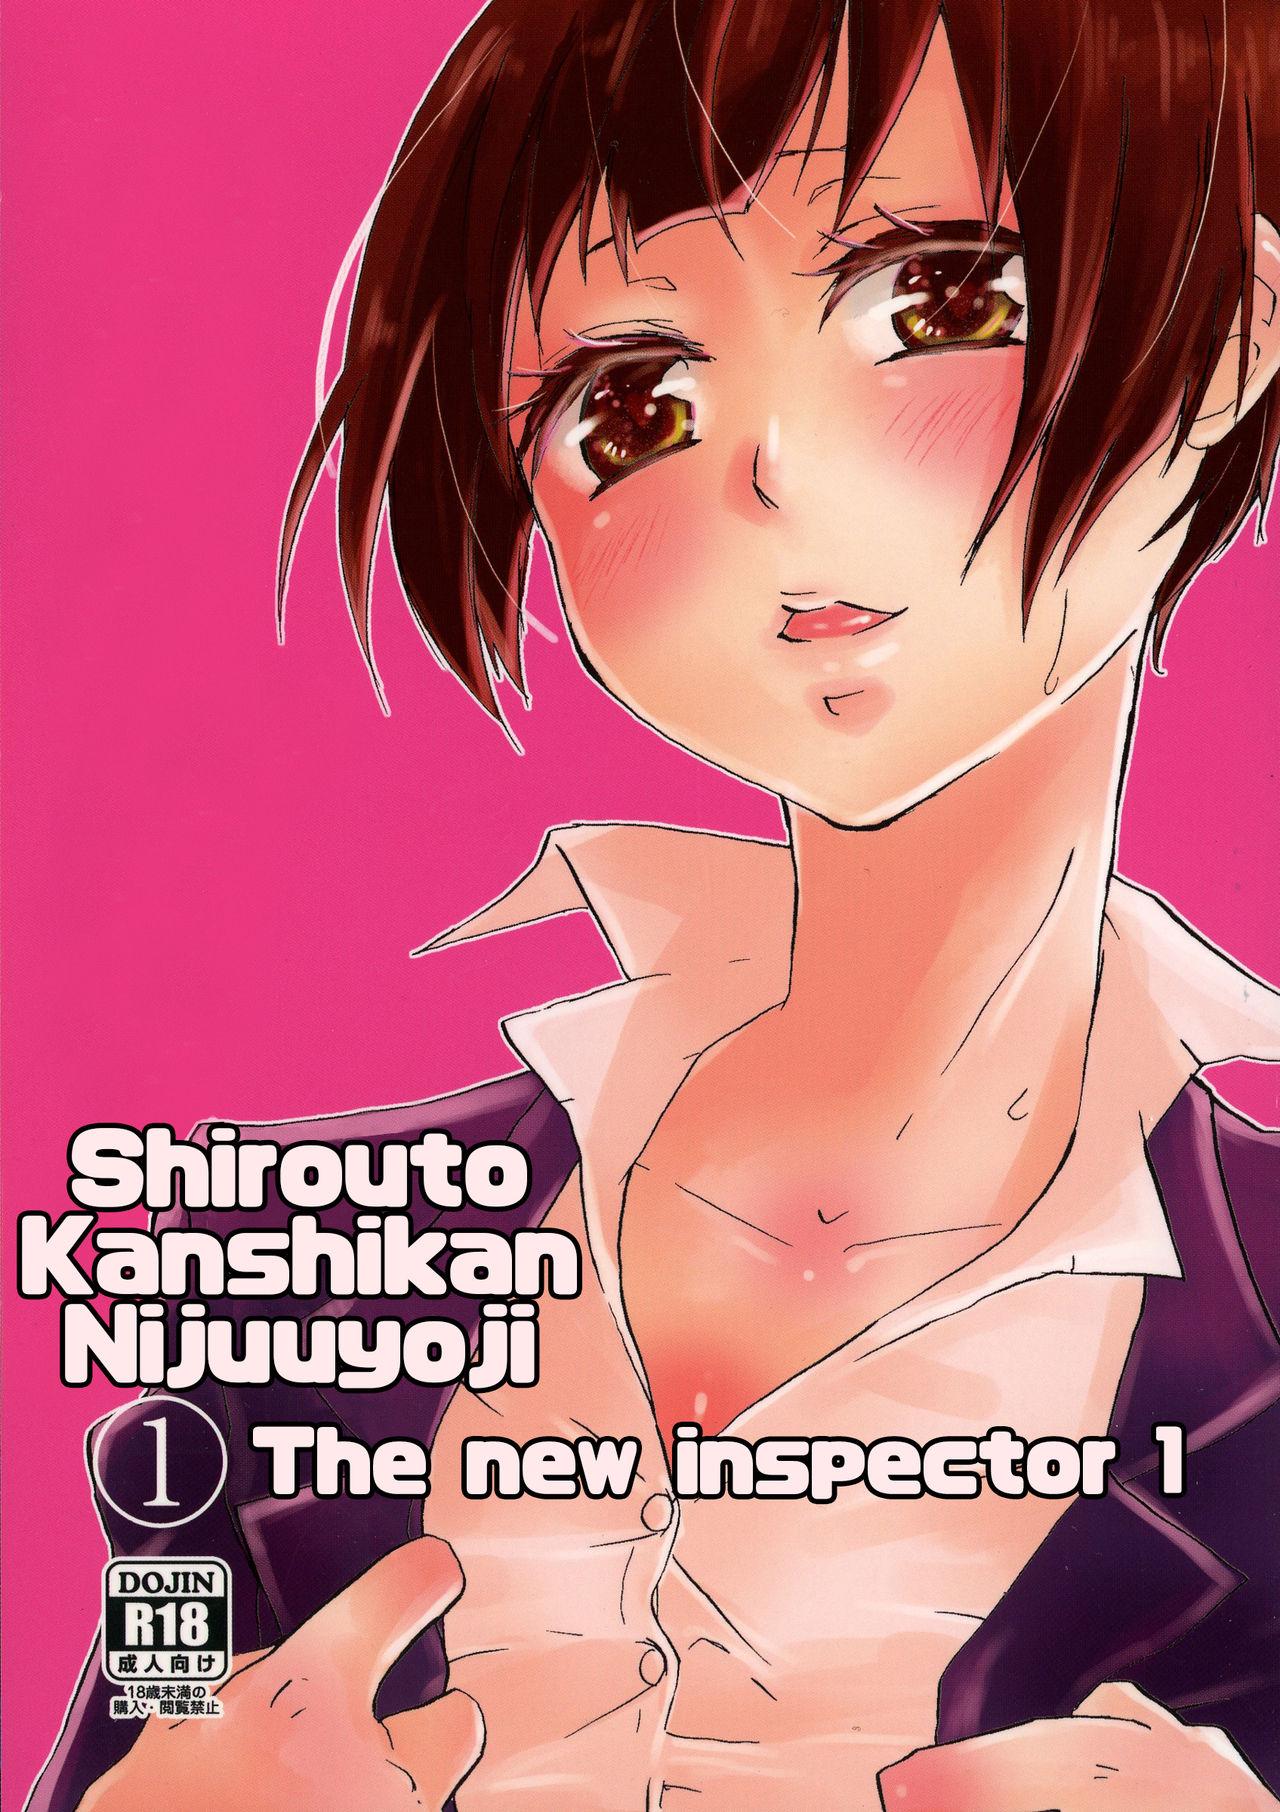 Shirouto Kanshikan Nijuuyoji 1 | The new inspector 1 0